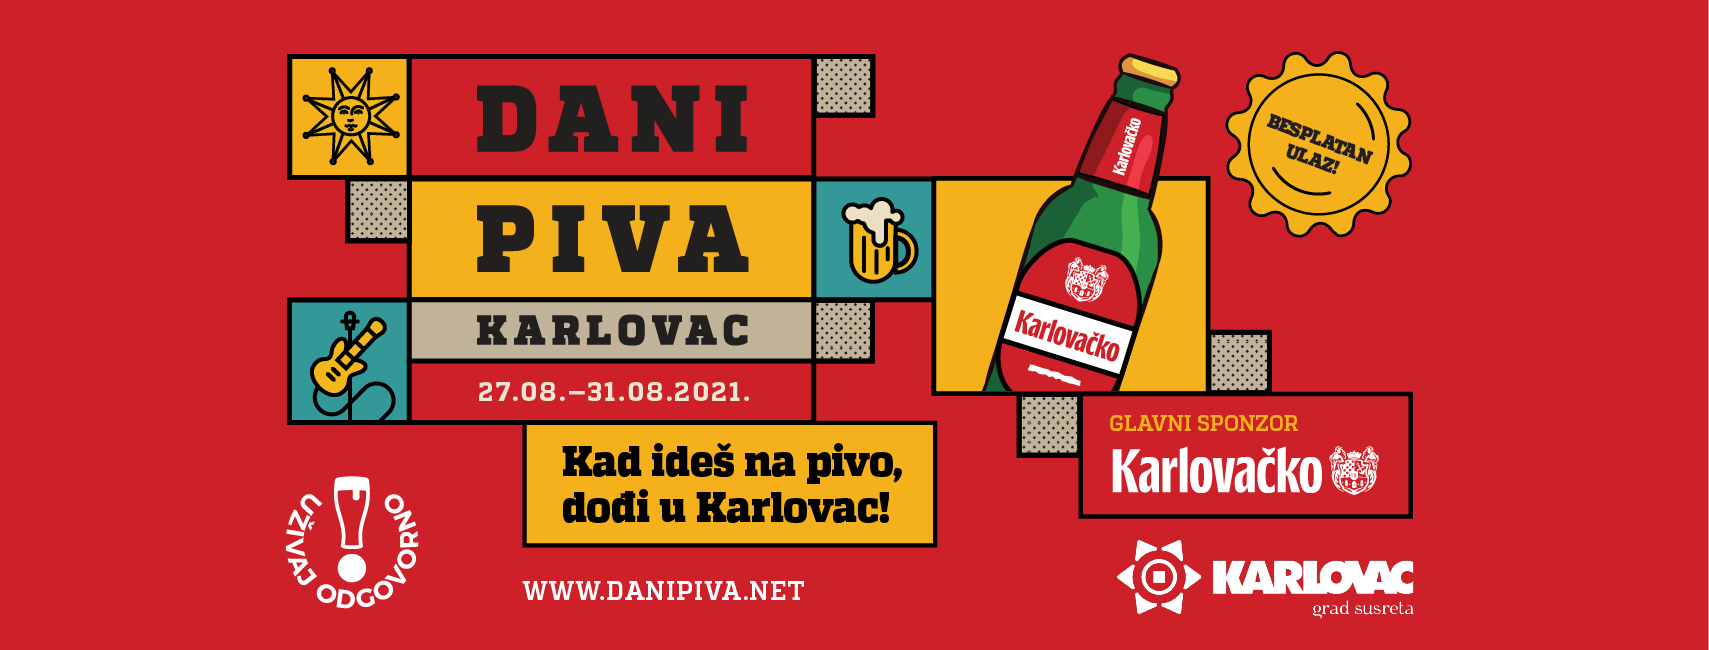 karlovac-beer-days-5.png